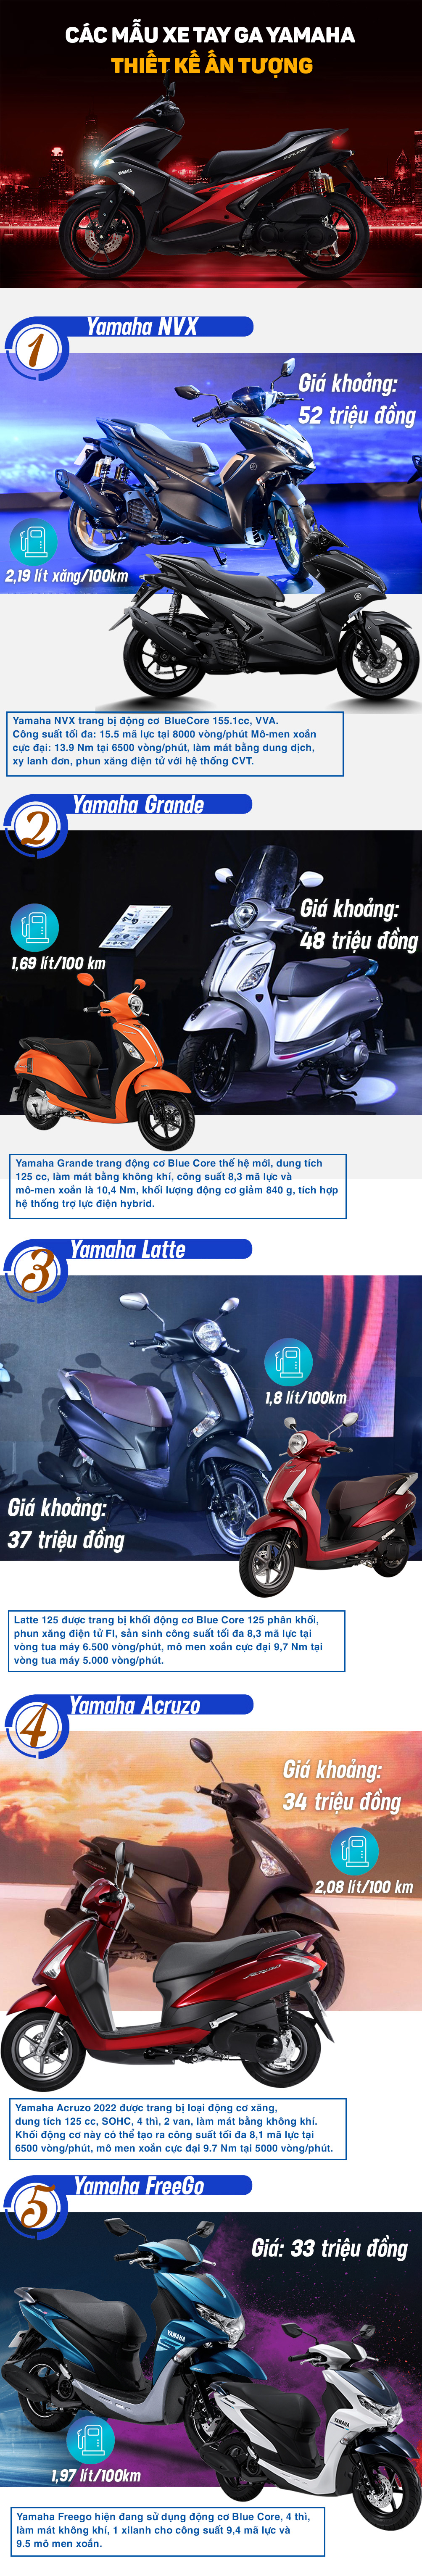 Các mẫu xe tay ga Yamaha sở hữu thiết kế ấn tượng với giá chỉ từ 30 triệu đồng - 1